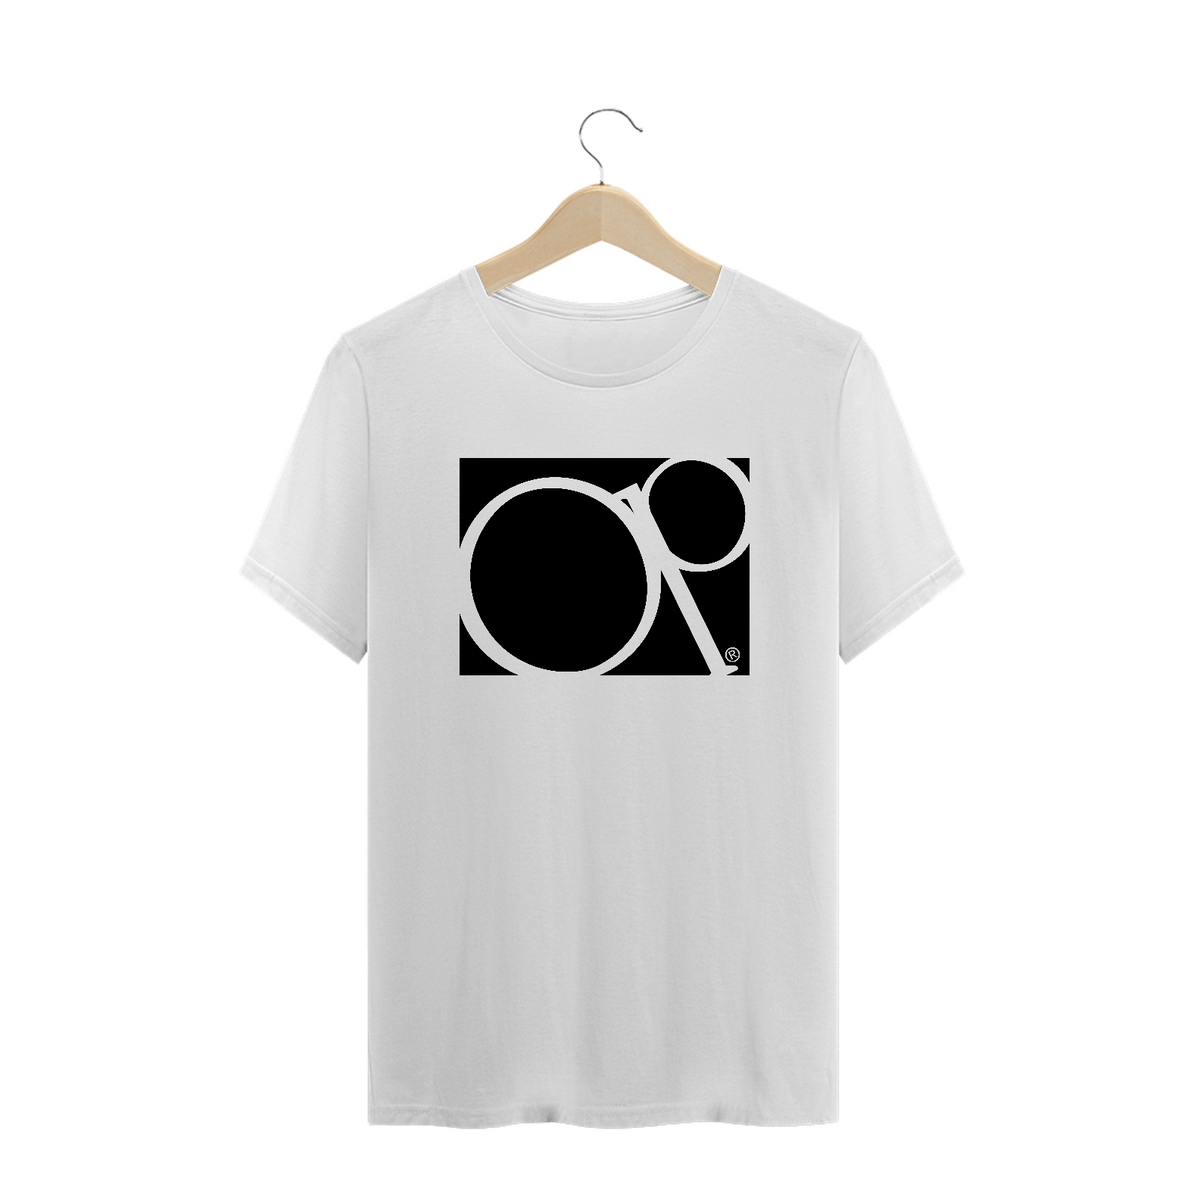 Nome do produto: Camiseta PLUS SIZE - Coleção Dreams - OP 80s 